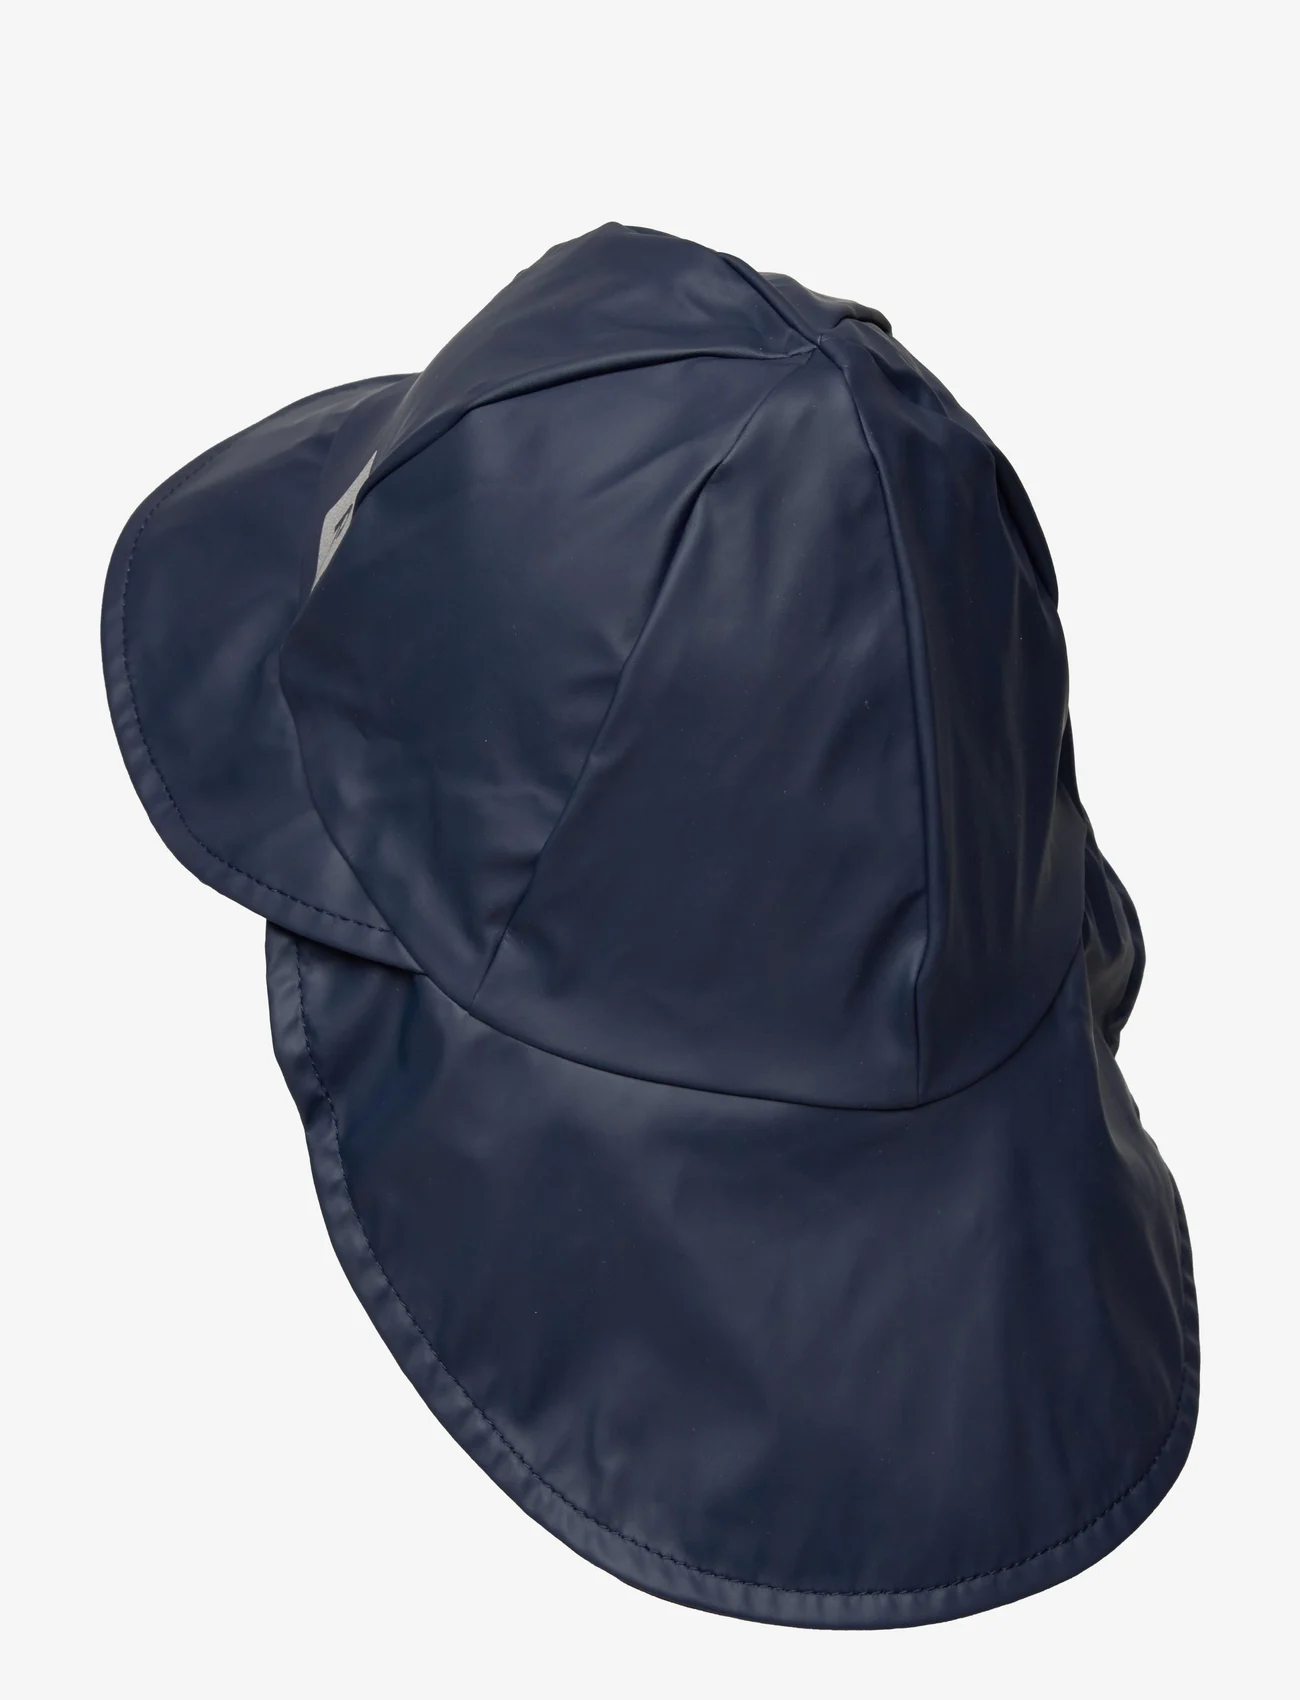 Reima - Rain hat, Rainy - madalaimad hinnad - navy - 1